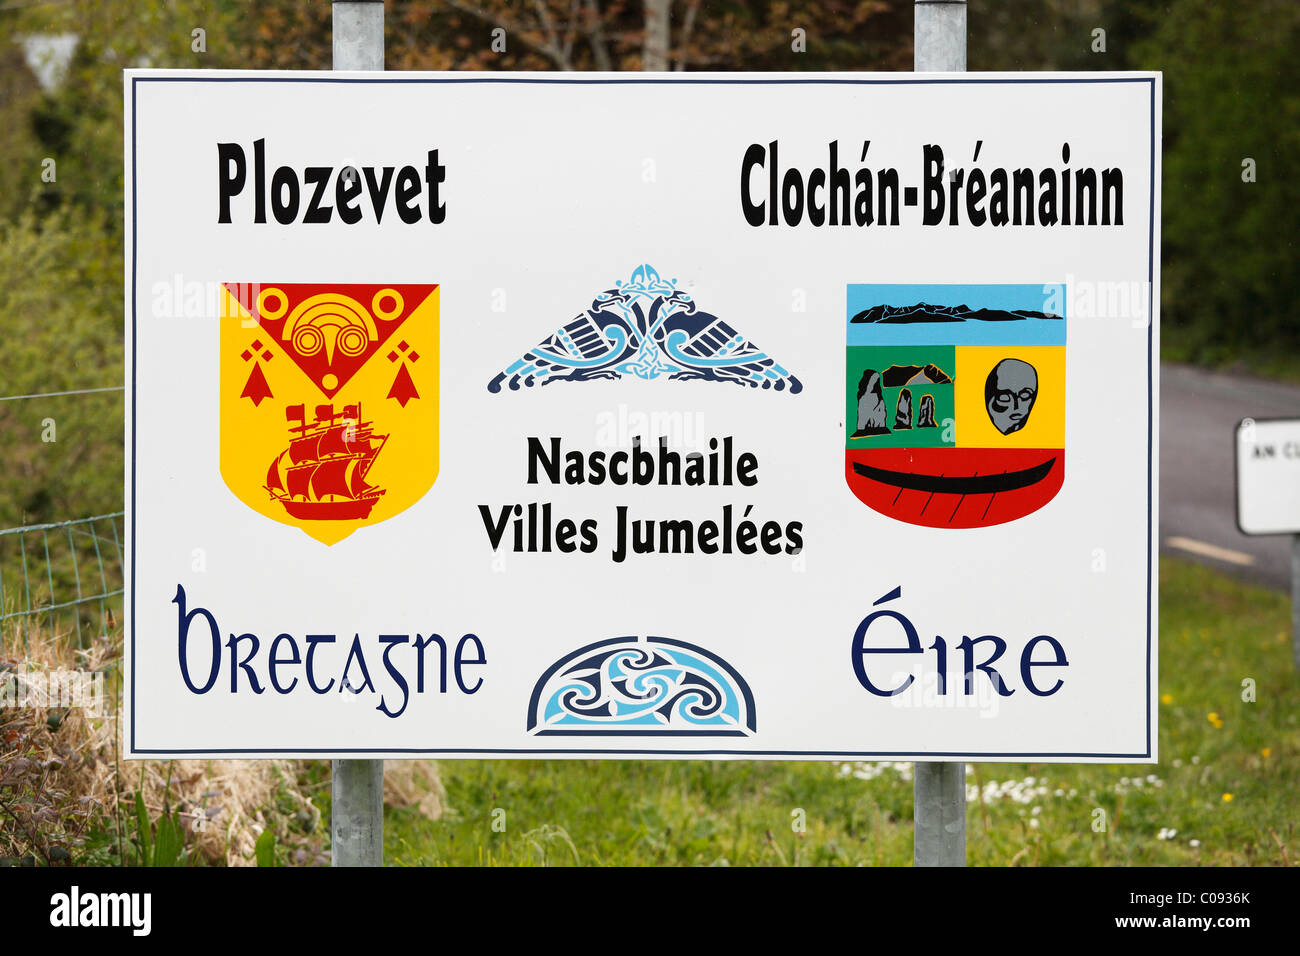 Sign in irlandese e francese per le città gemellate Plozevet in Bretagna e Brandon-Cloghan in Irlanda, la penisola di Dingle, , Ireland Foto Stock